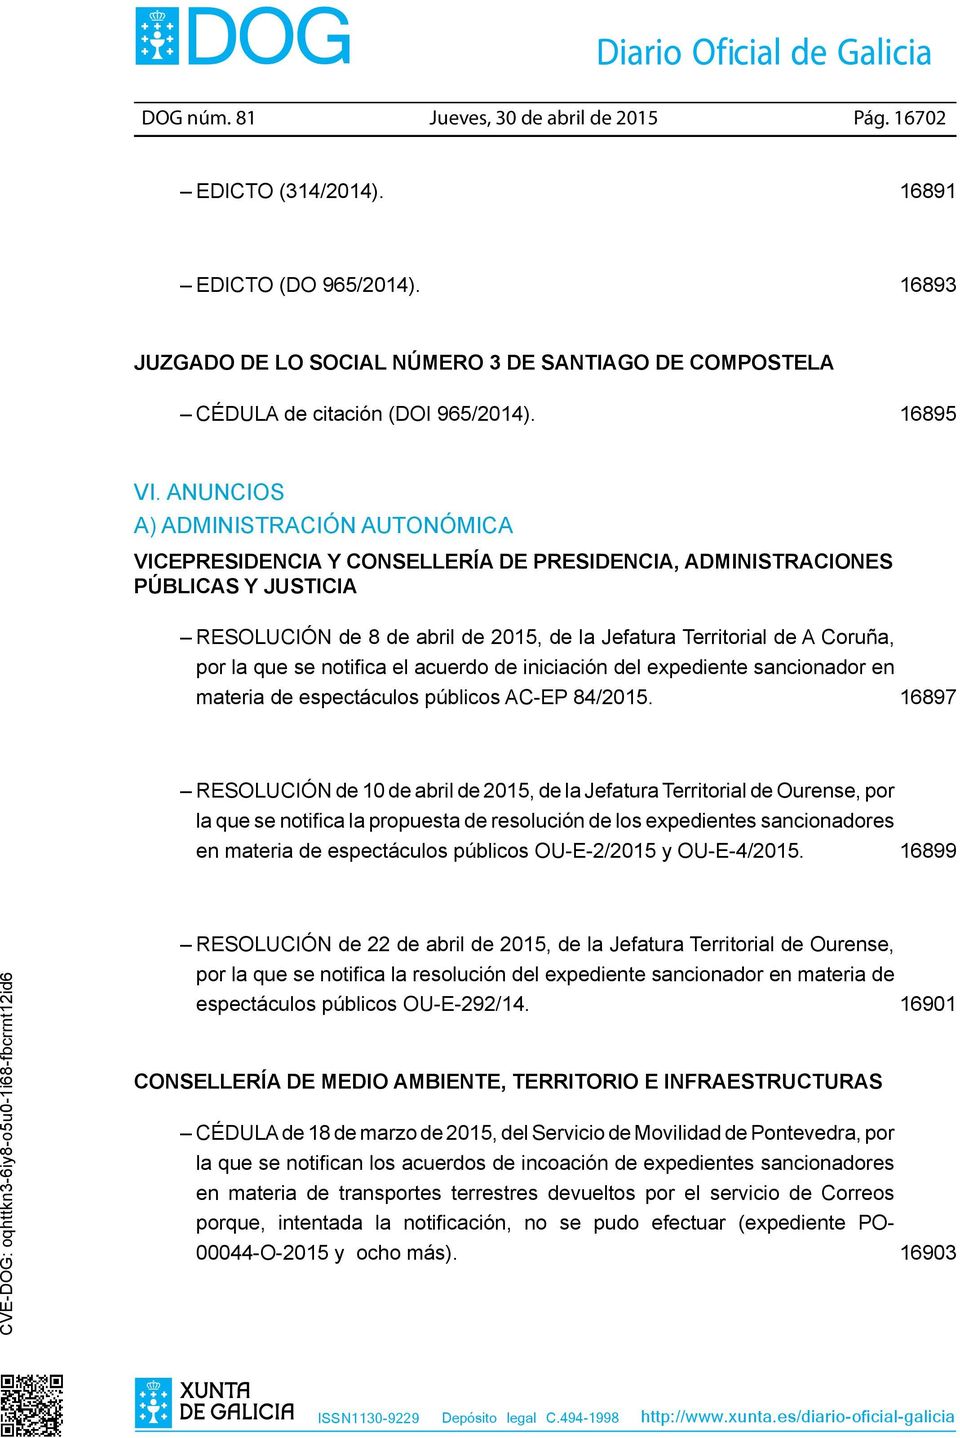 Anuncios a) Administración autonómica Vicepresidencia y Consellería de Presidencia, Administraciones Públicas y Justicia RESOLUCIÓN de 8 de abril de 2015, de la Jefatura Territorial de A Coruña, por